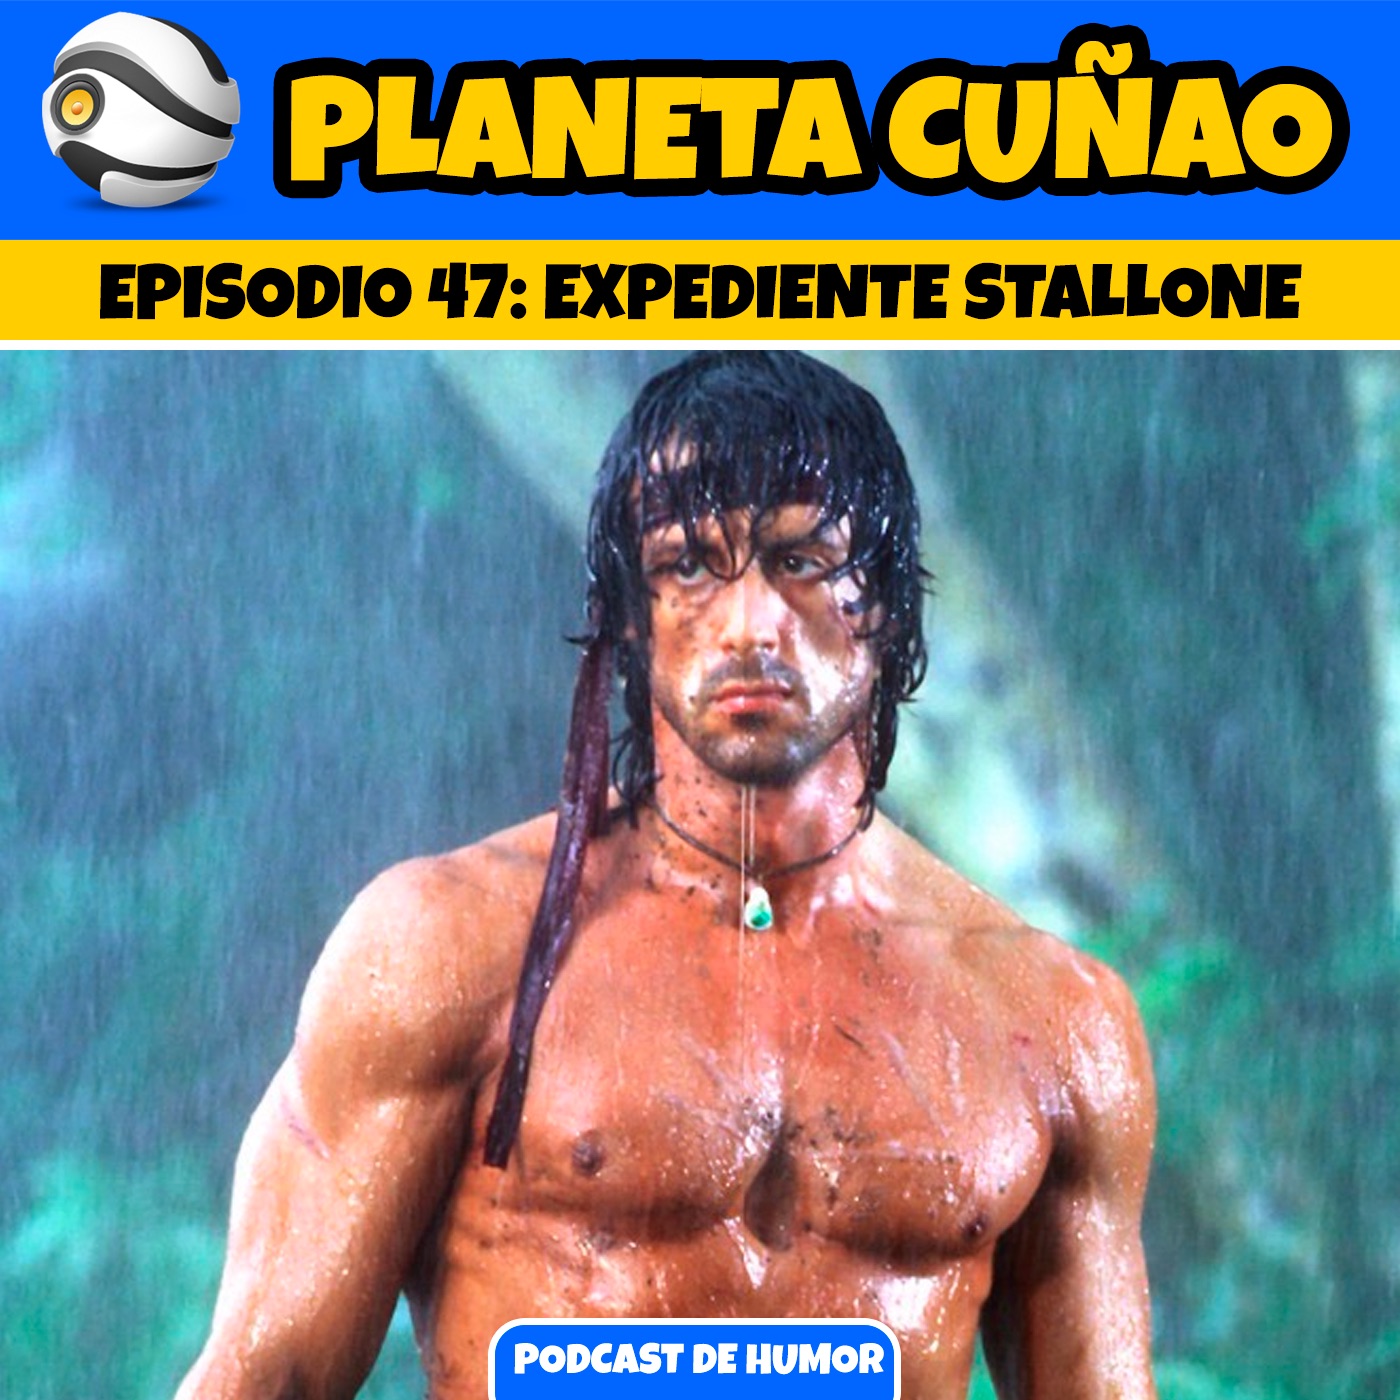 Episodio 47: Expendiente Stallone. El cuñao del cuñao de Rocky